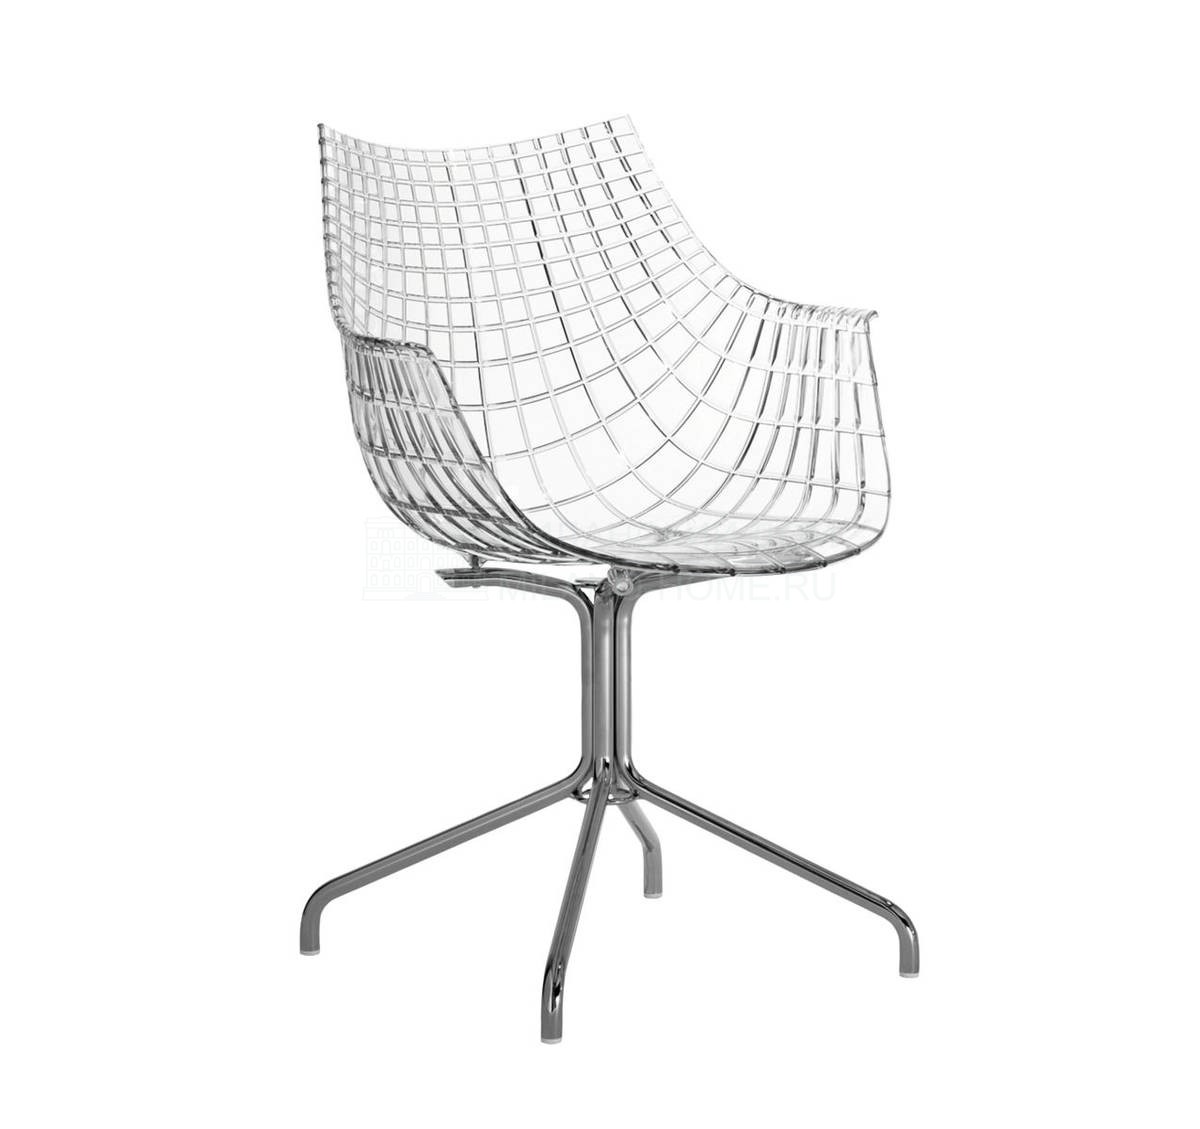 Полукресло Meridiana chair из Италии фабрики DRIADE